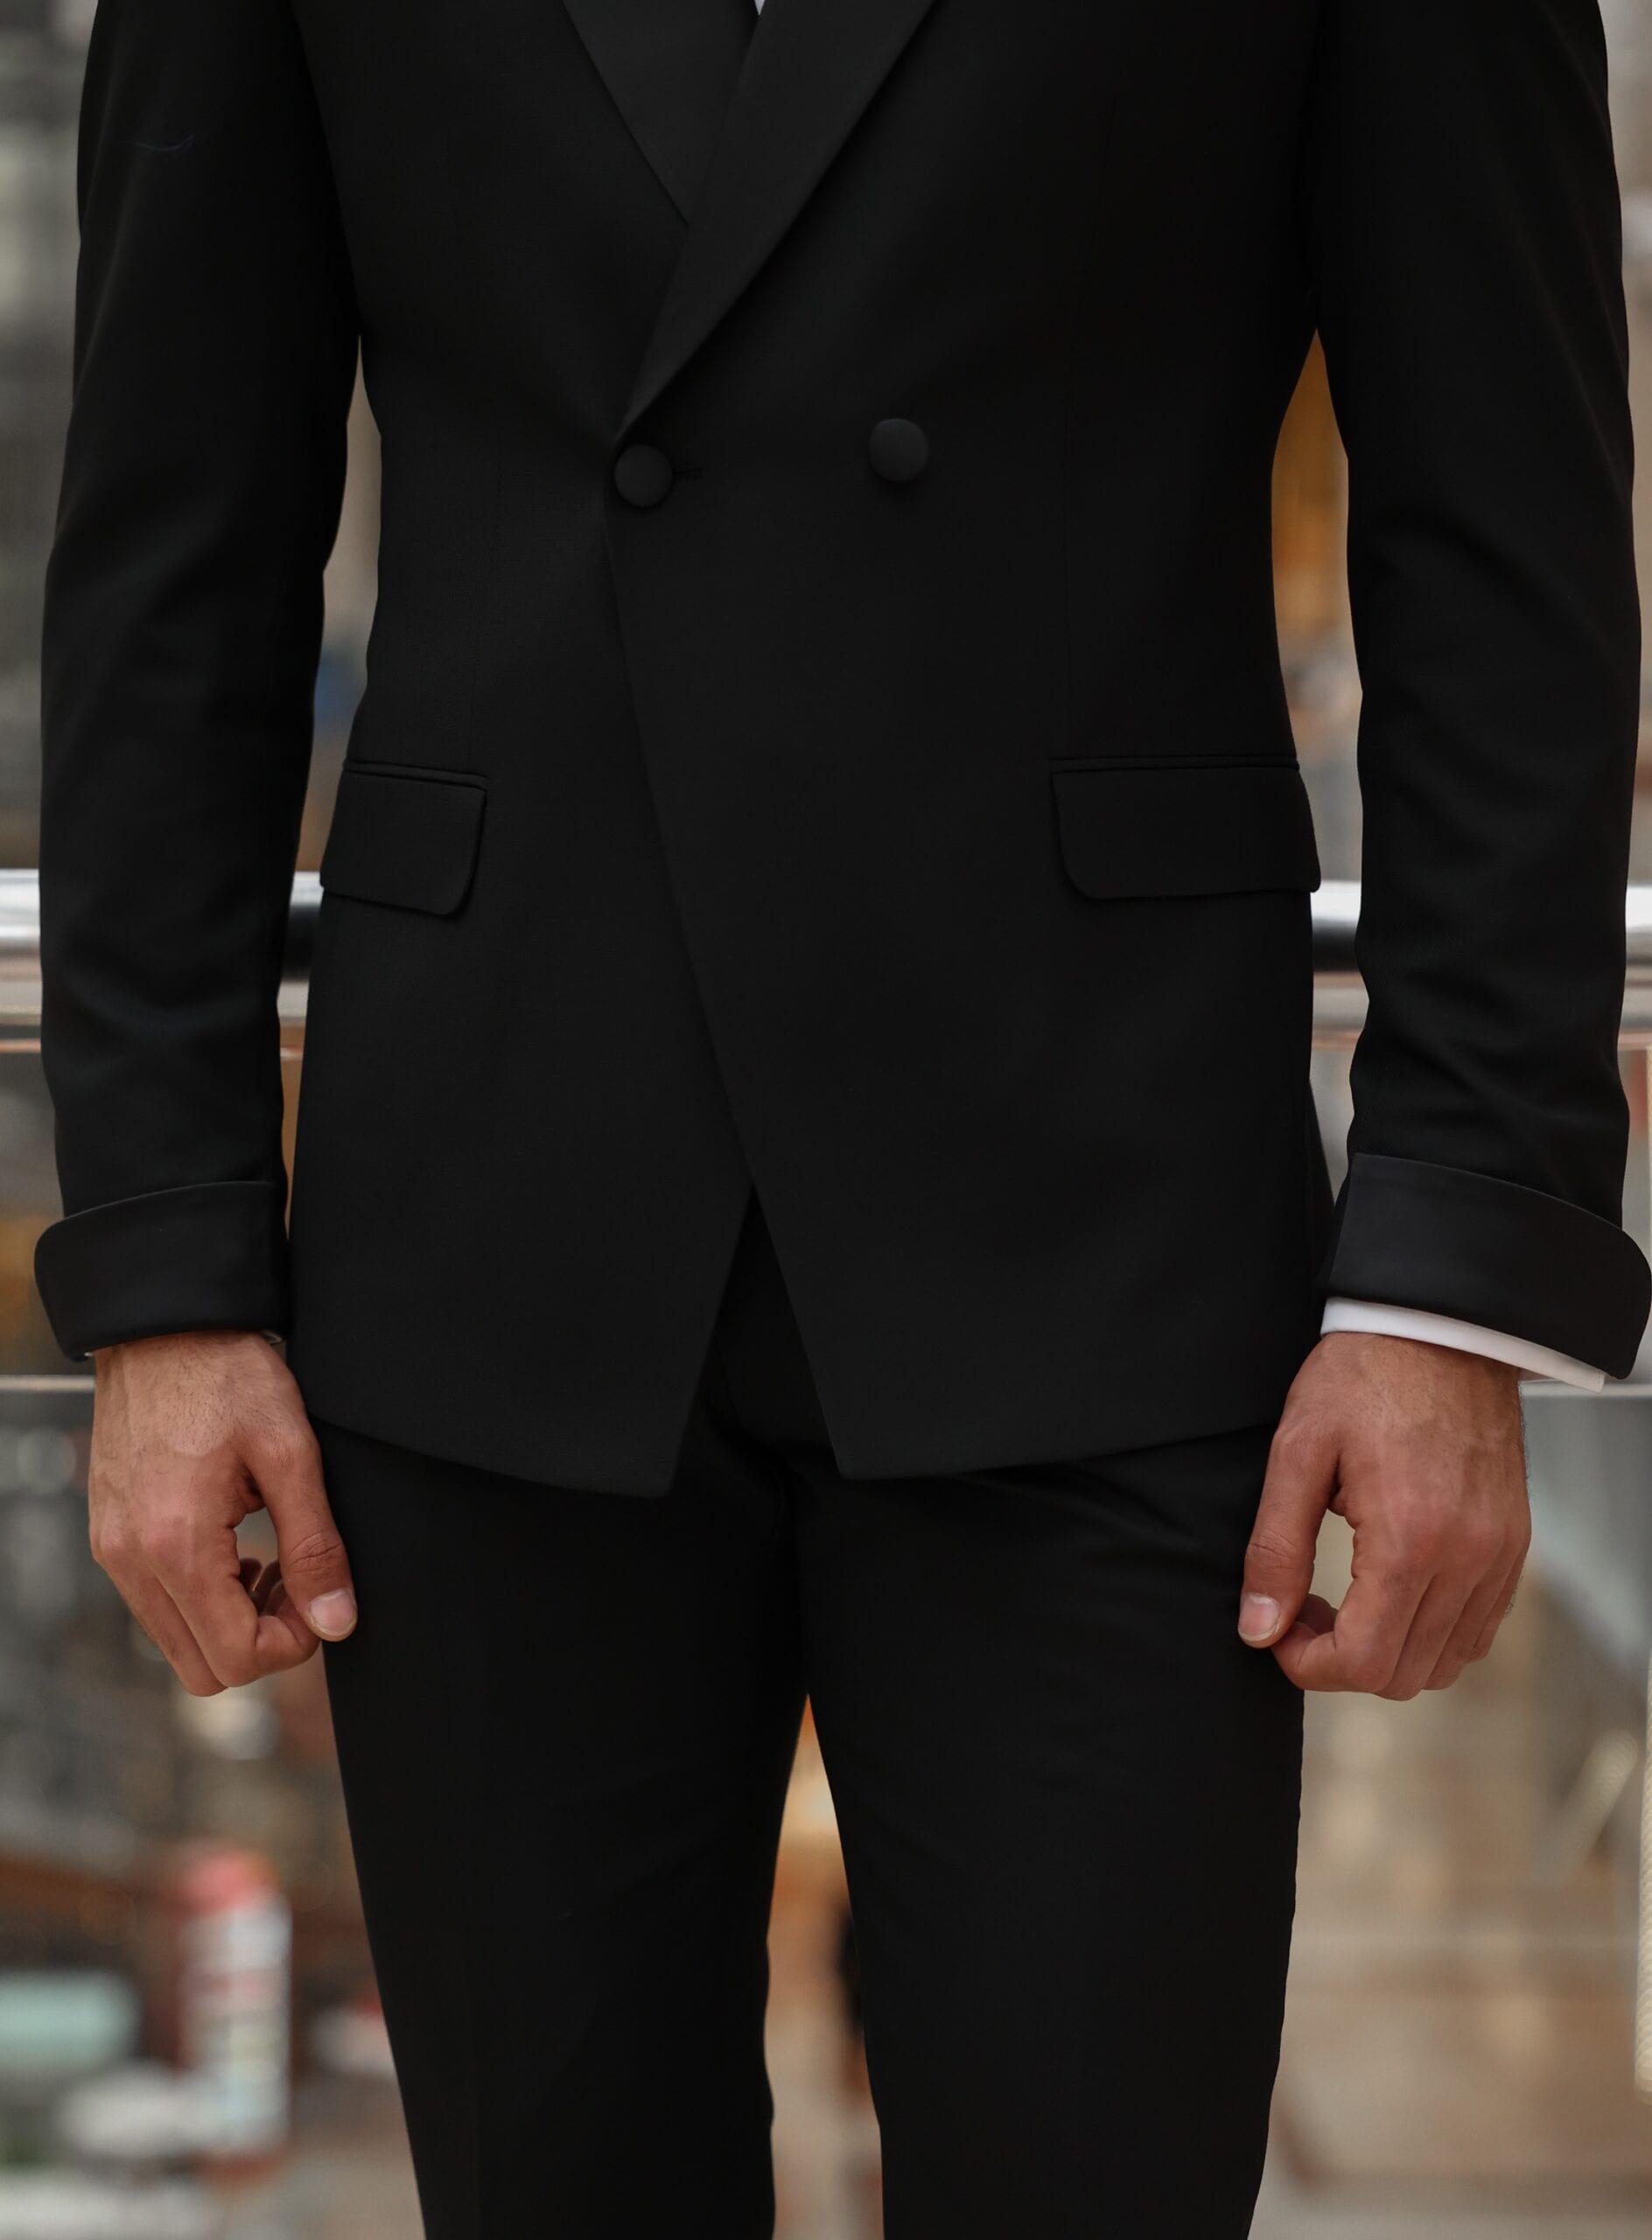 aesido 2 Pieces Business Peak Lapel Men's Suit For Wedding (Blazer+Pants）